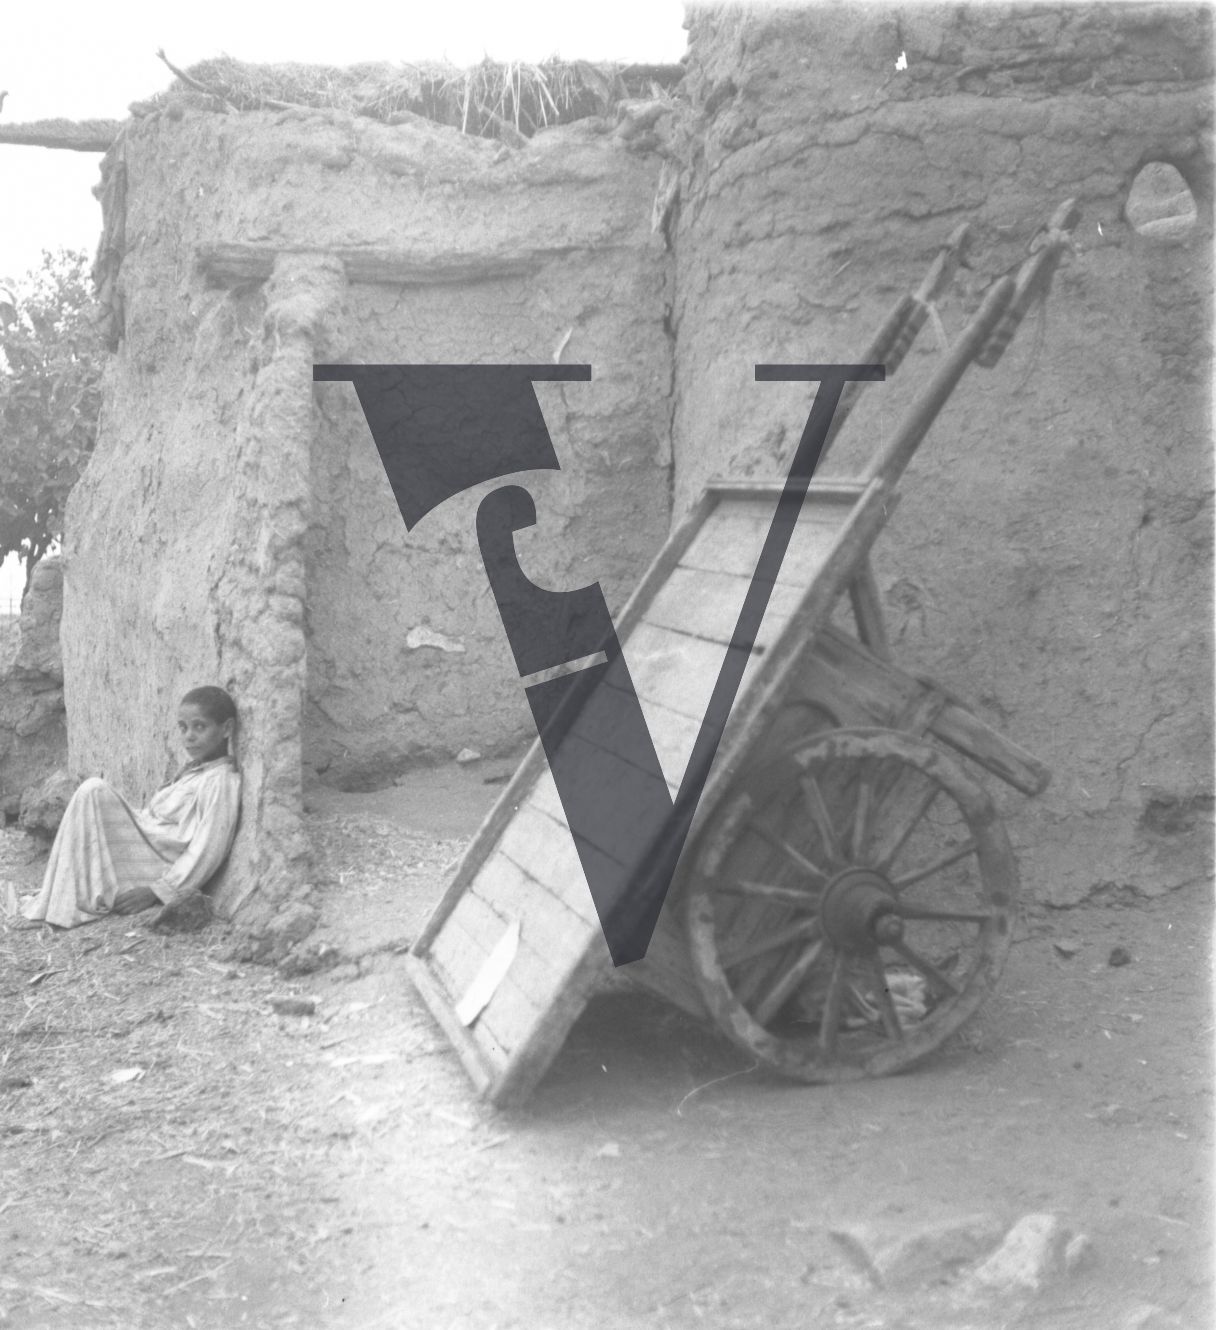 Harrania, Egypt, boy sits near handcart.